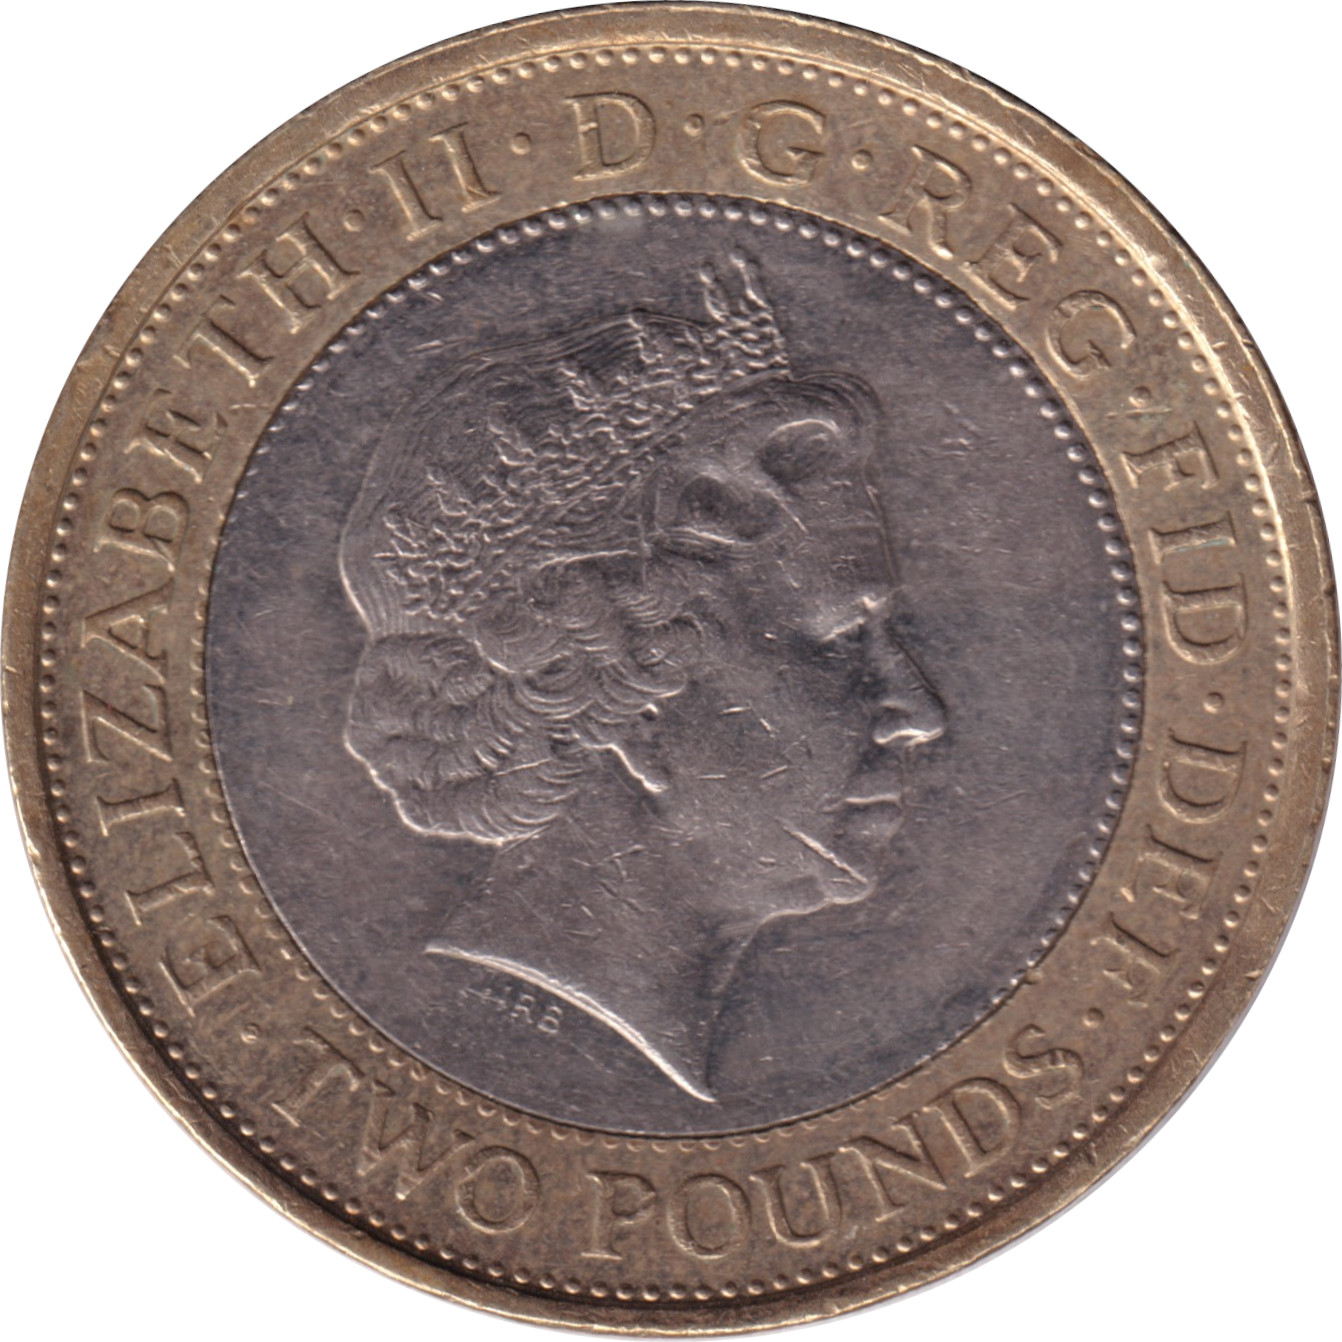 2 pound - Abolition de l'esclavage - 200 ans